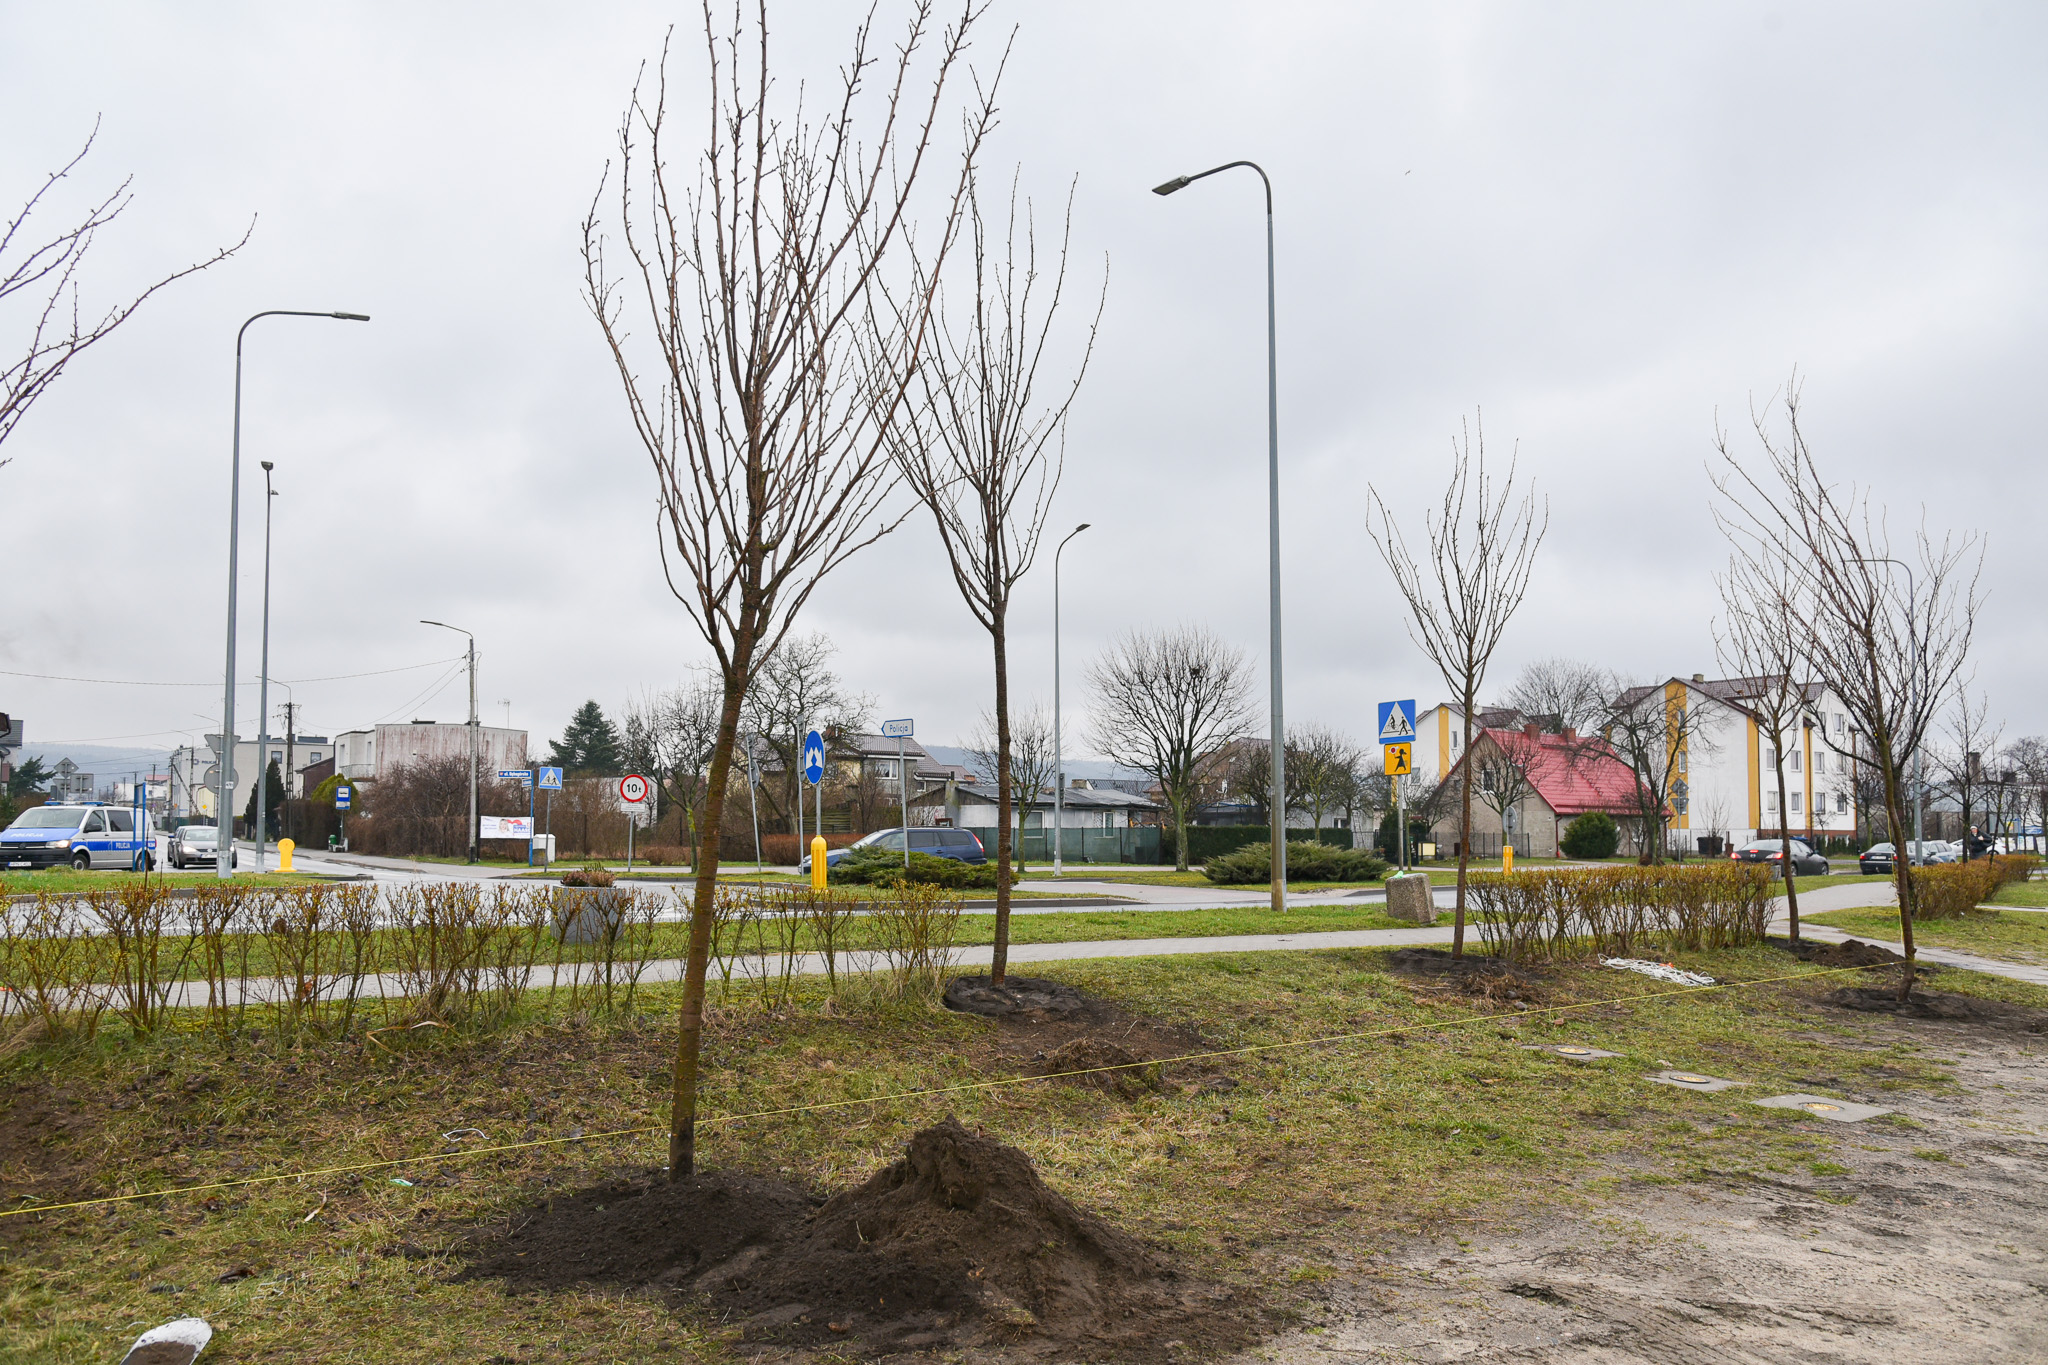 Teren, na którym pojawiają się nowe drzewa – widok w stronę ul. Dębogórskiej